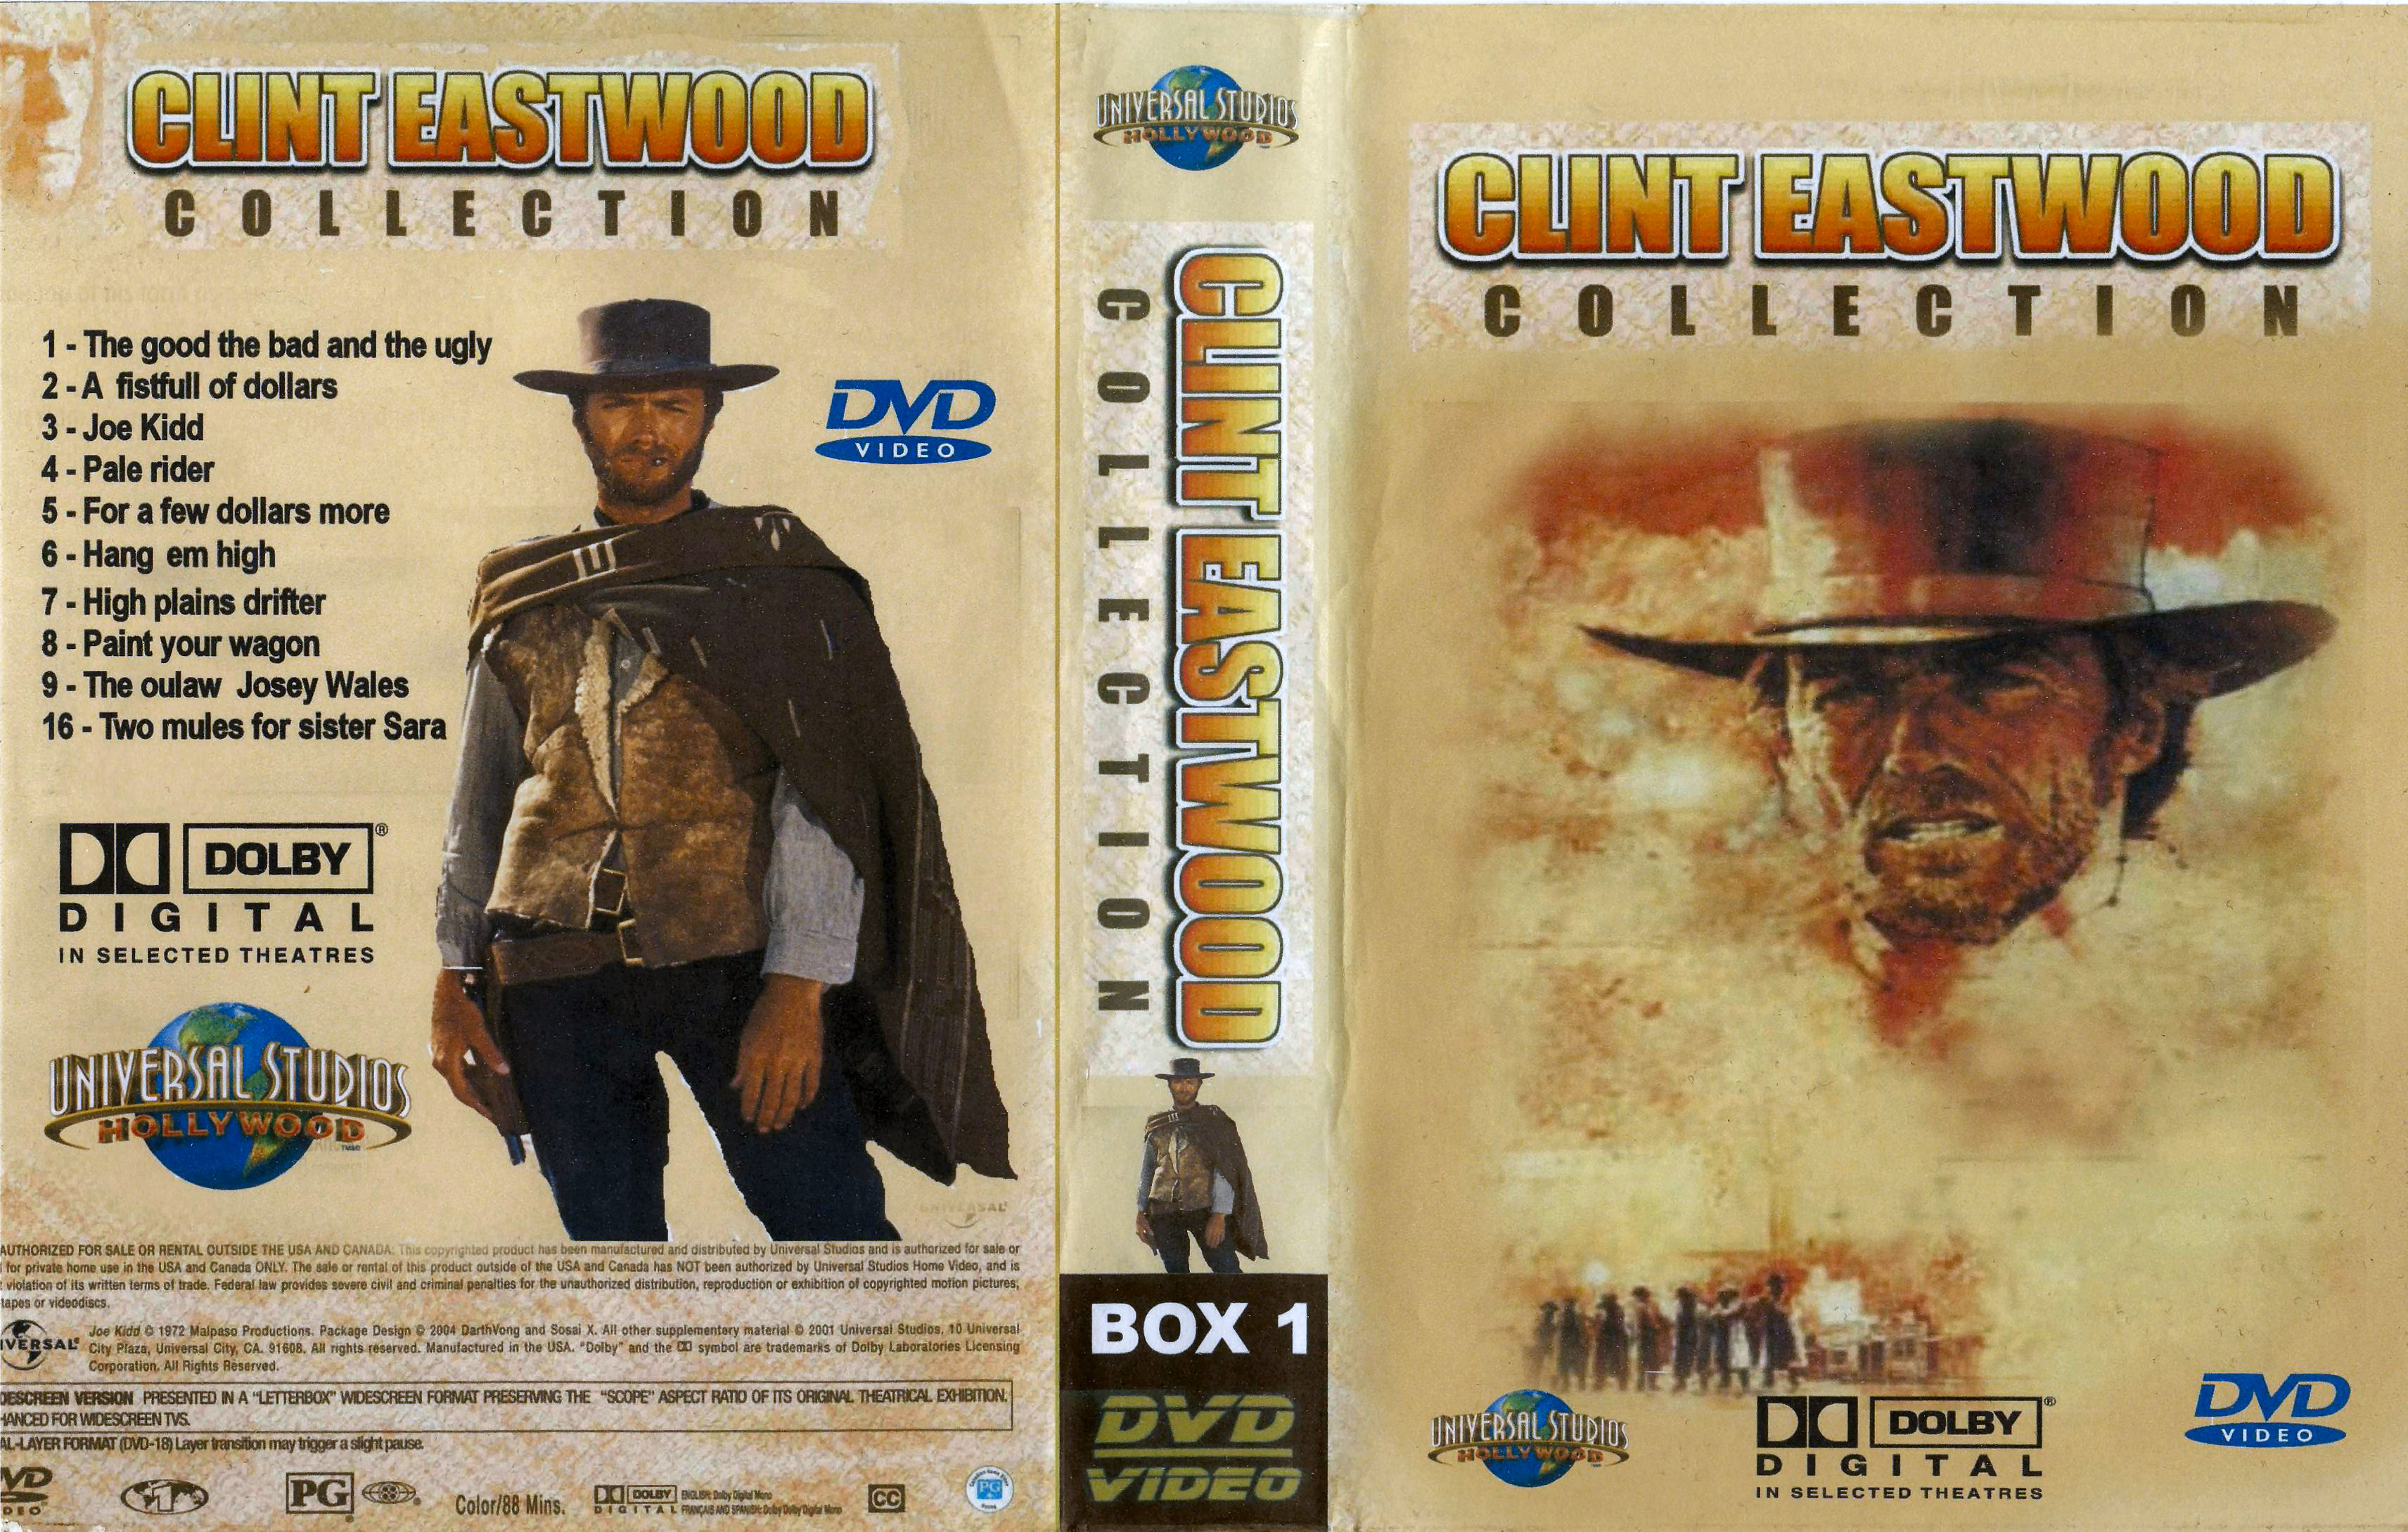 Clint Eastwood Collectie Box 1 DvD 2 van 10